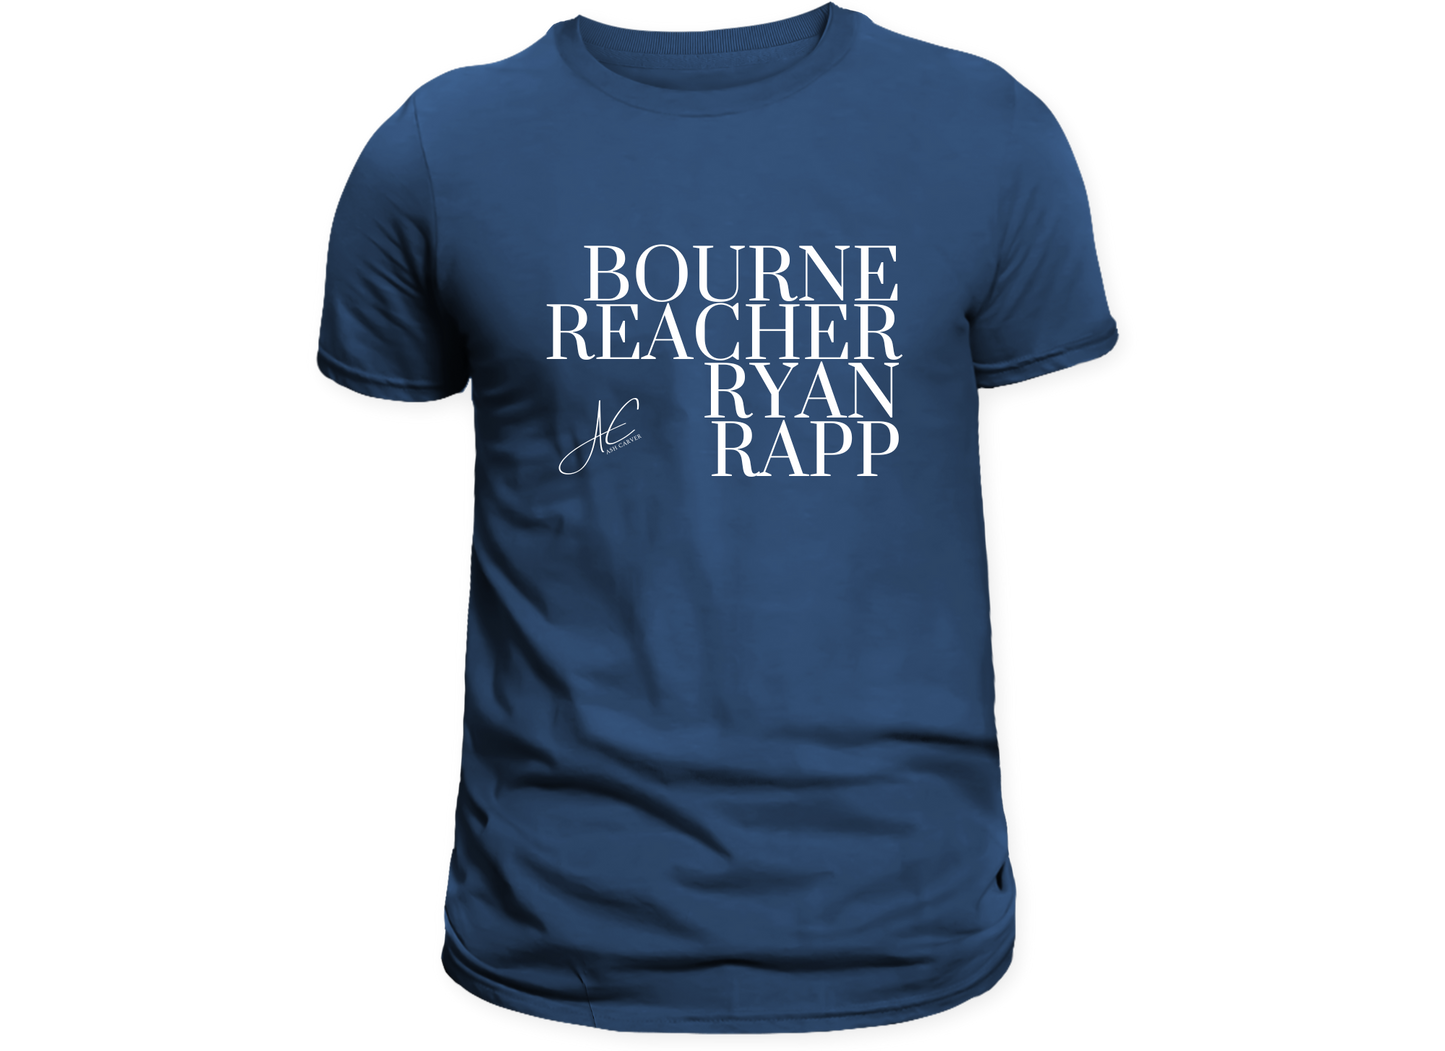 Fictional Bad Ass T-Shirt - Bourne, Reacher, Ryan, Rapp